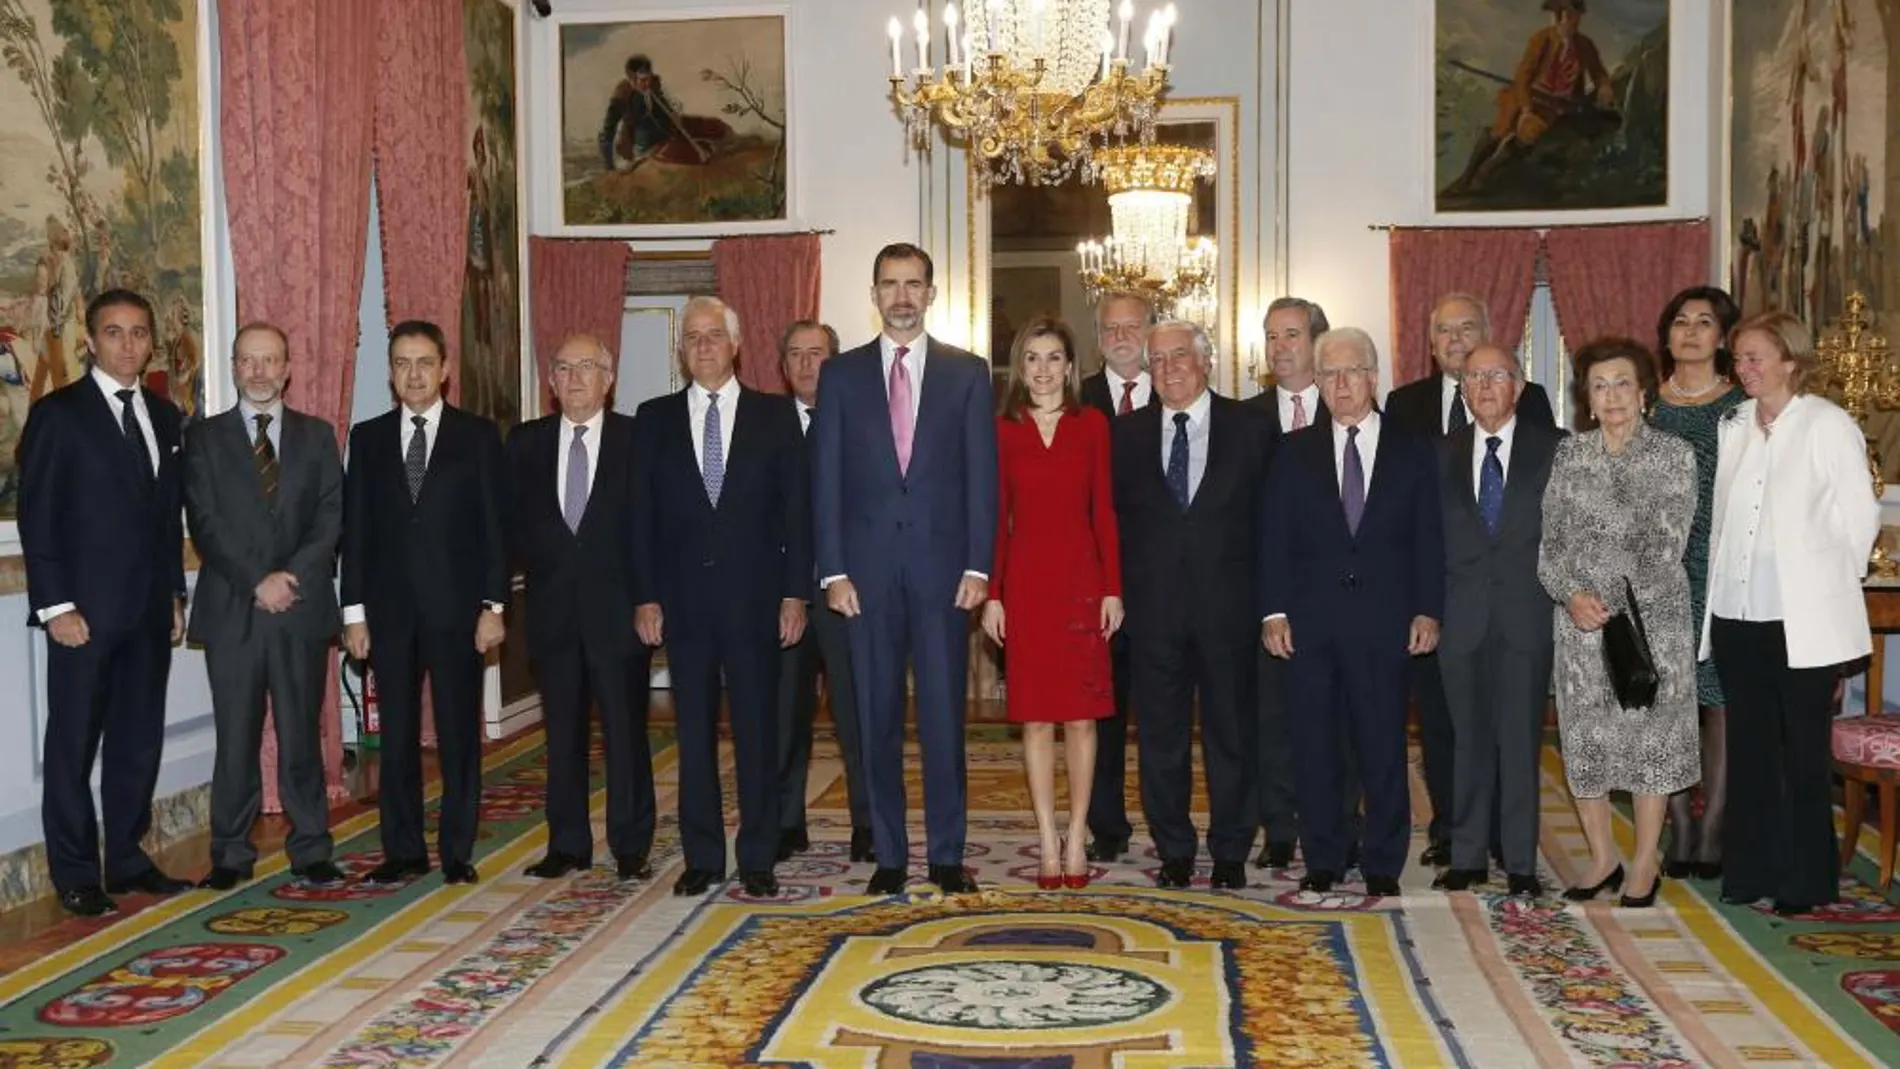 Los Reyes Felipe y Letizia posan con los integrantes de la Diputación Permanente y Consejo de la Grandeza de España